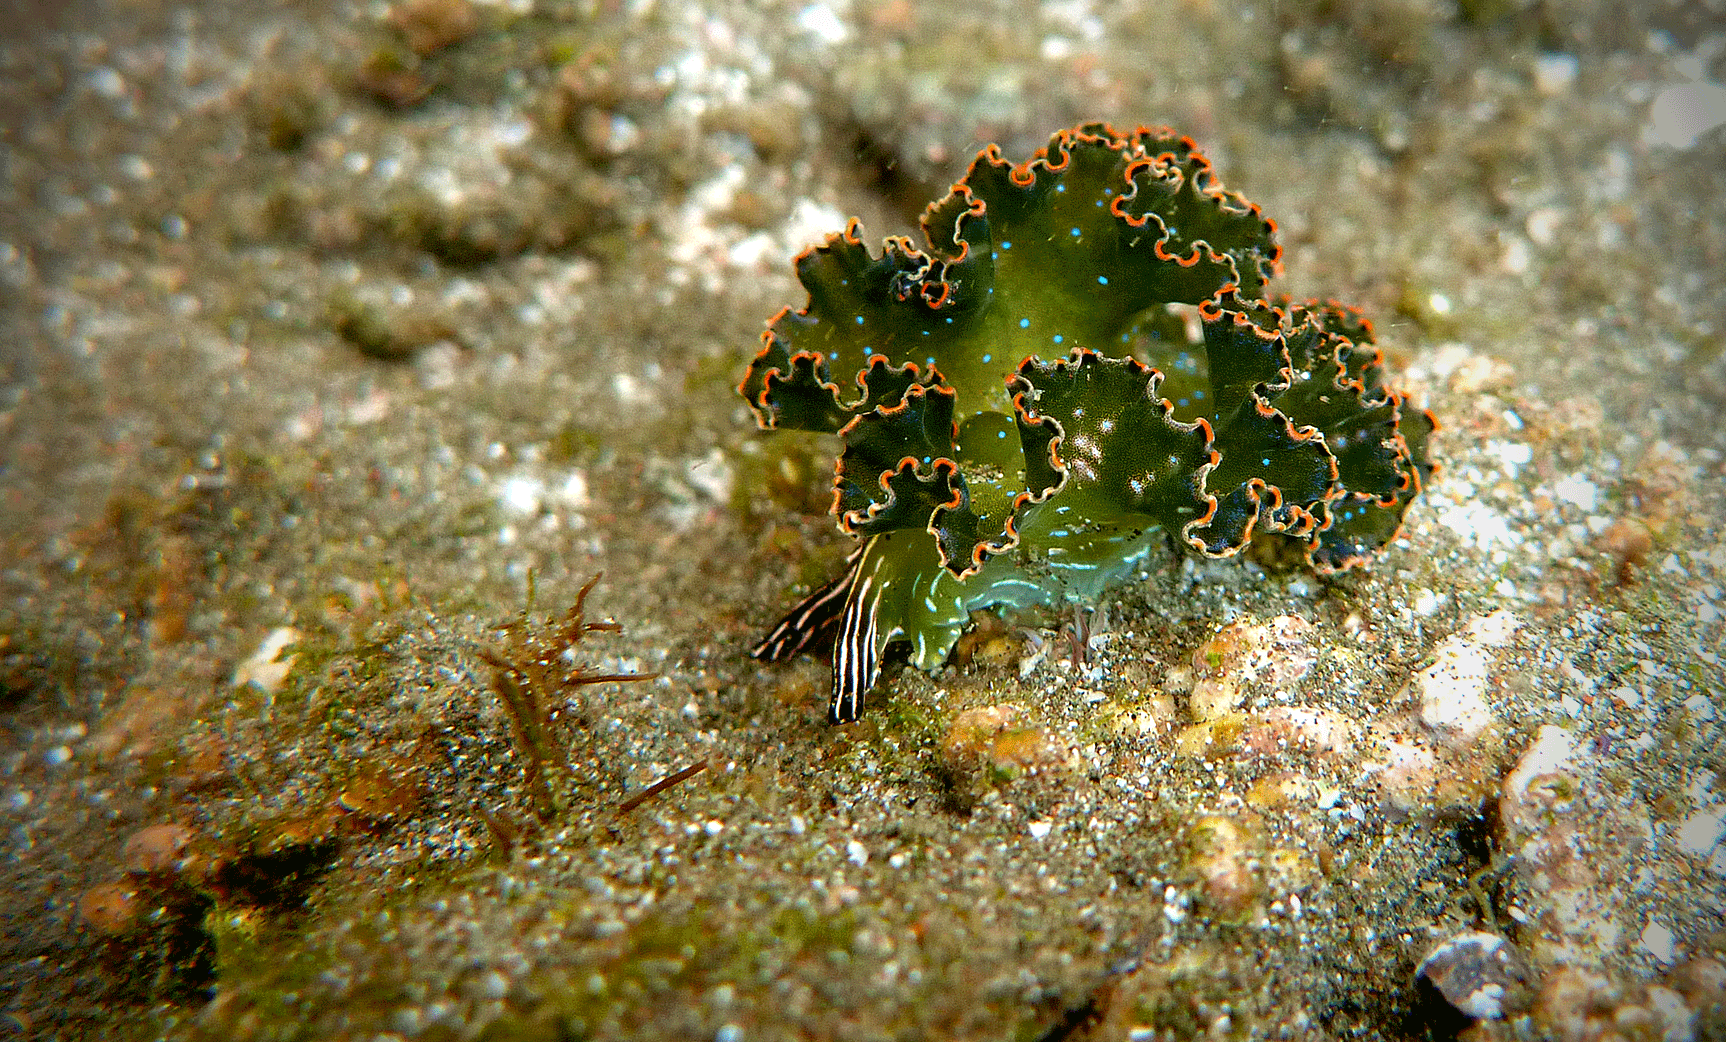 Lettuce Slug (Elysia Diomedea)